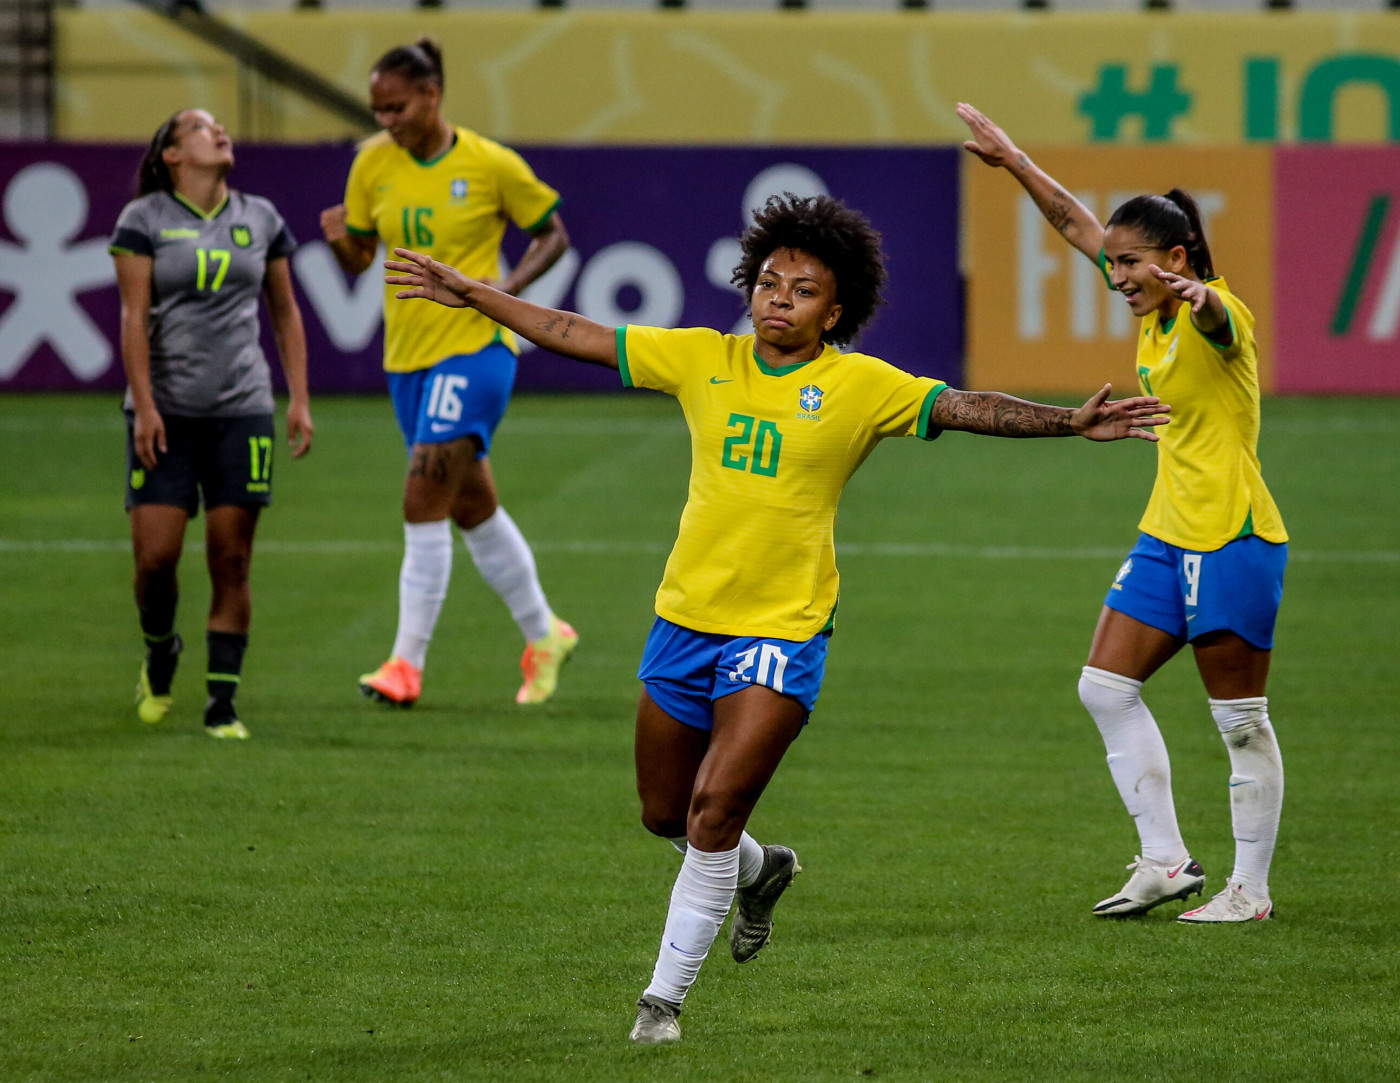 Seleção feminina de futebol estreia com goleada nos Jogos Tóquio 2020